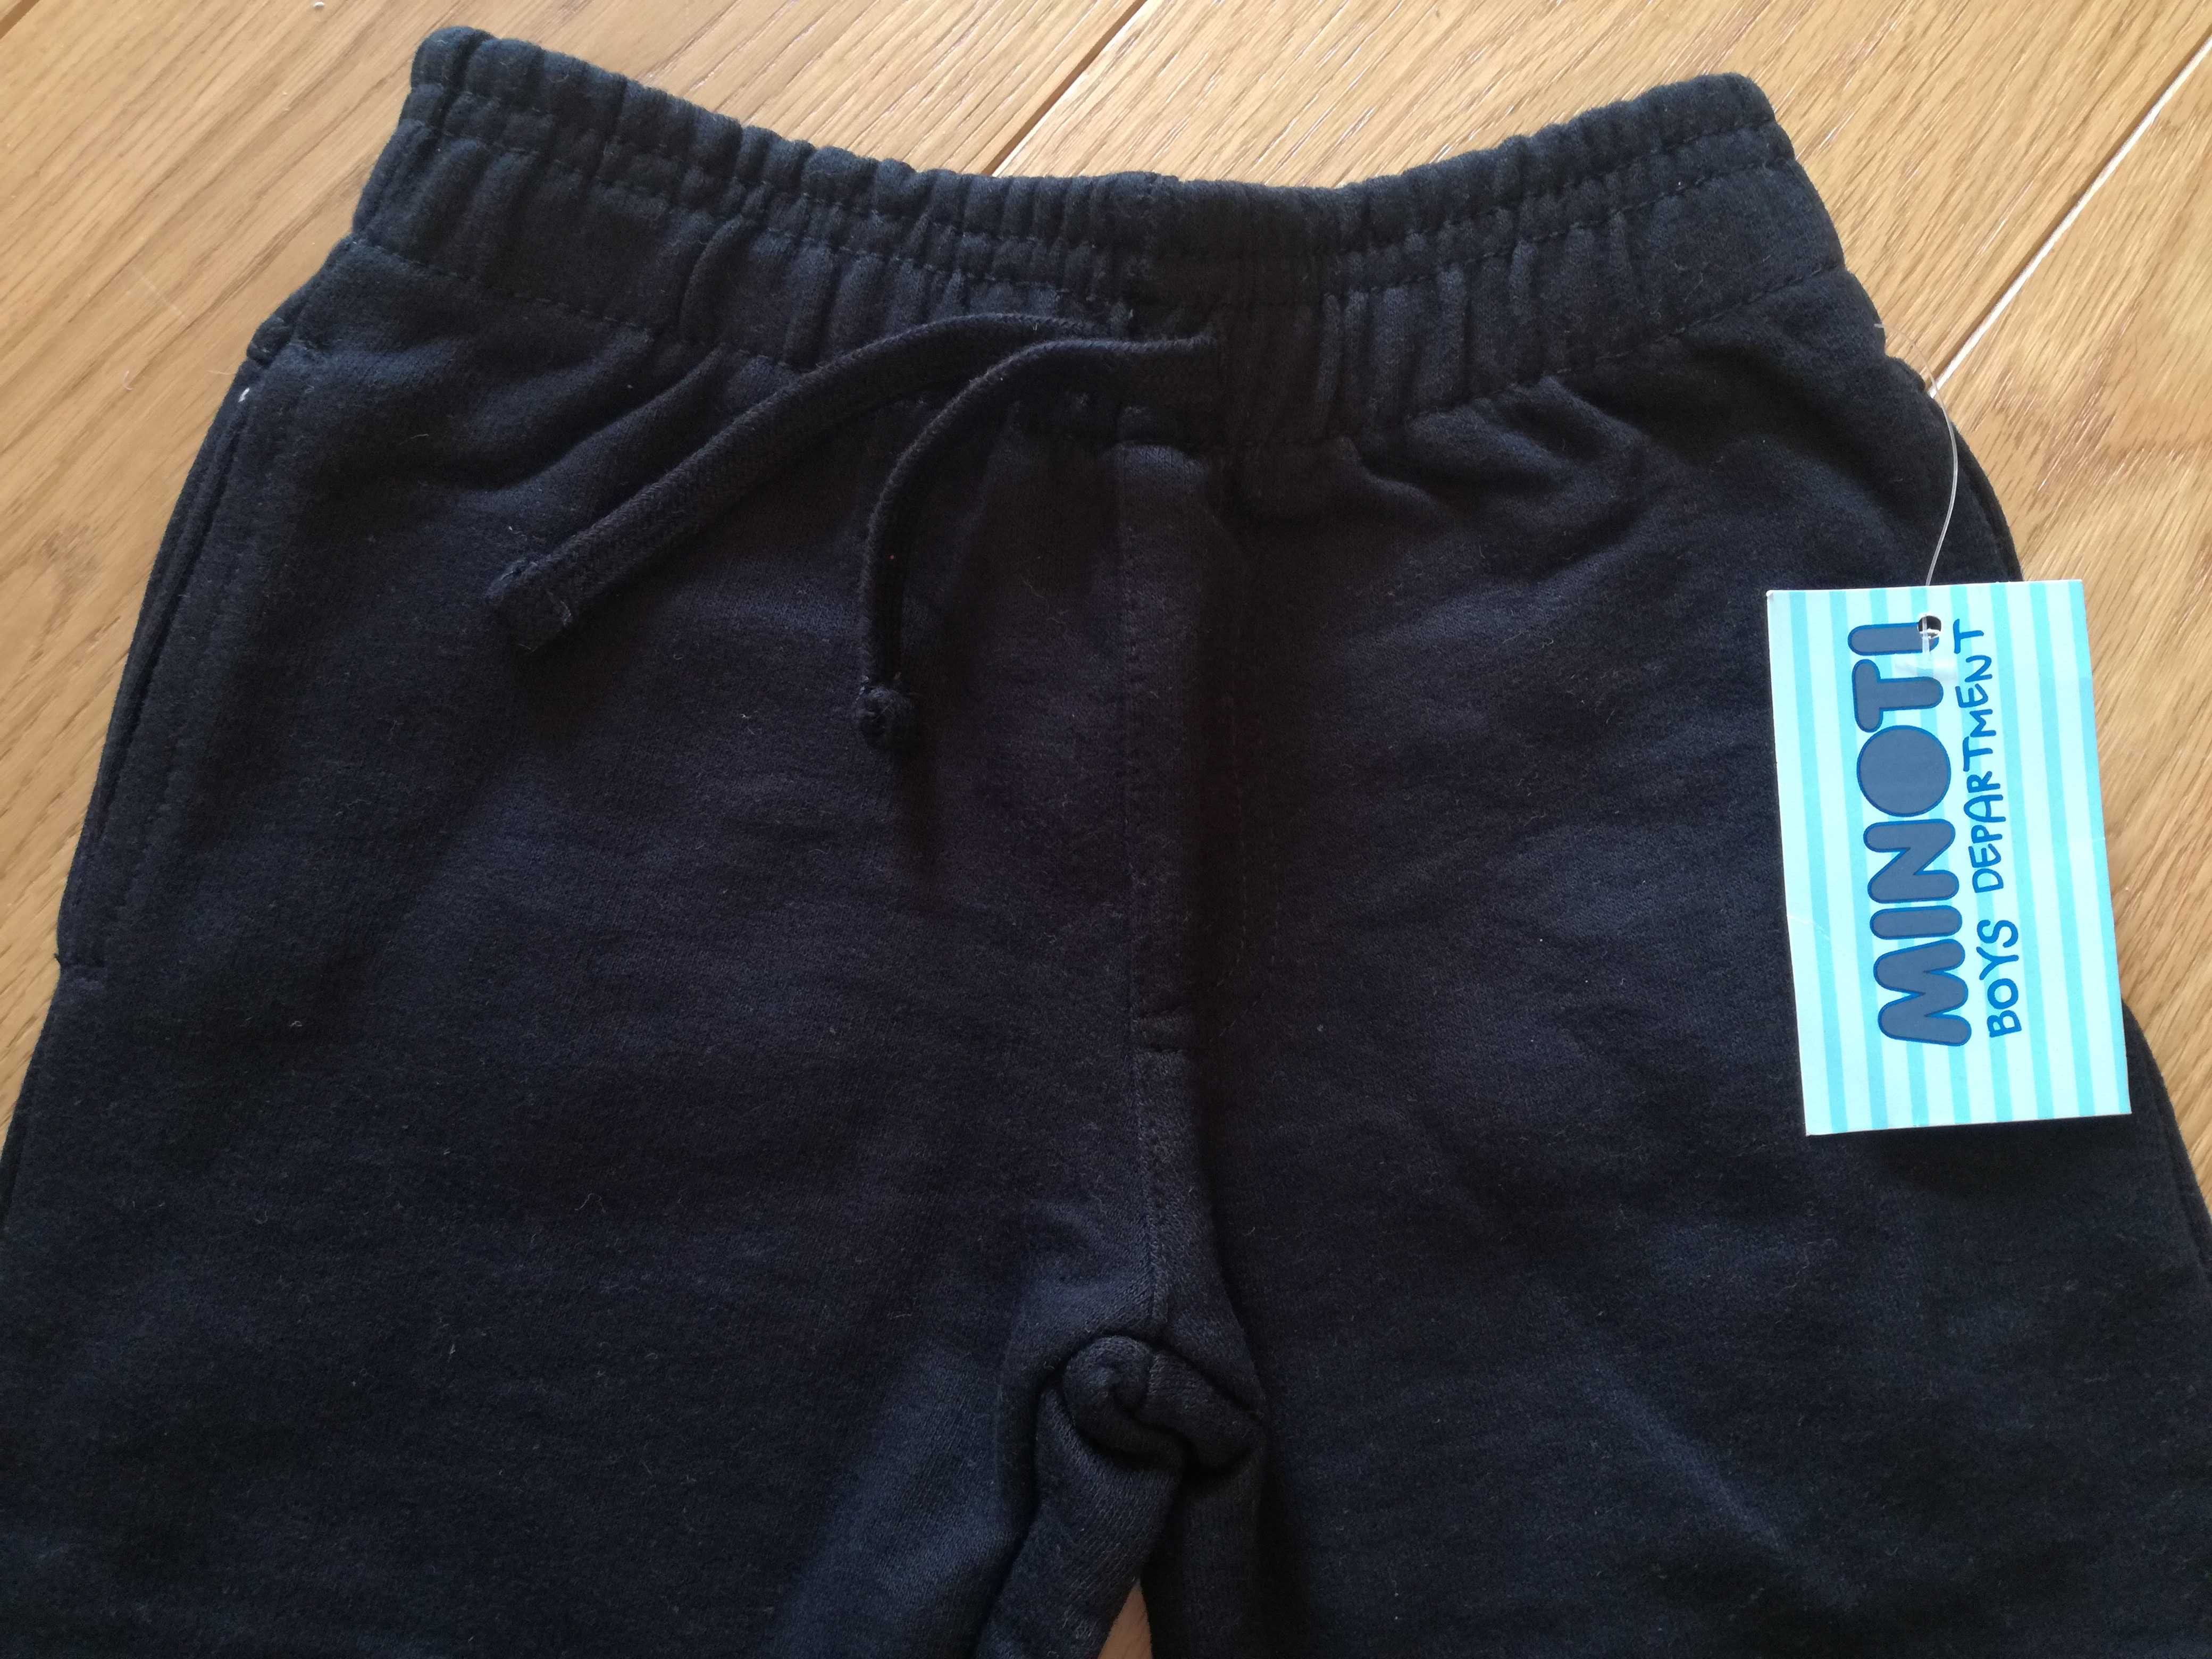 Spodnie dresowe nowe, 80-92 cm